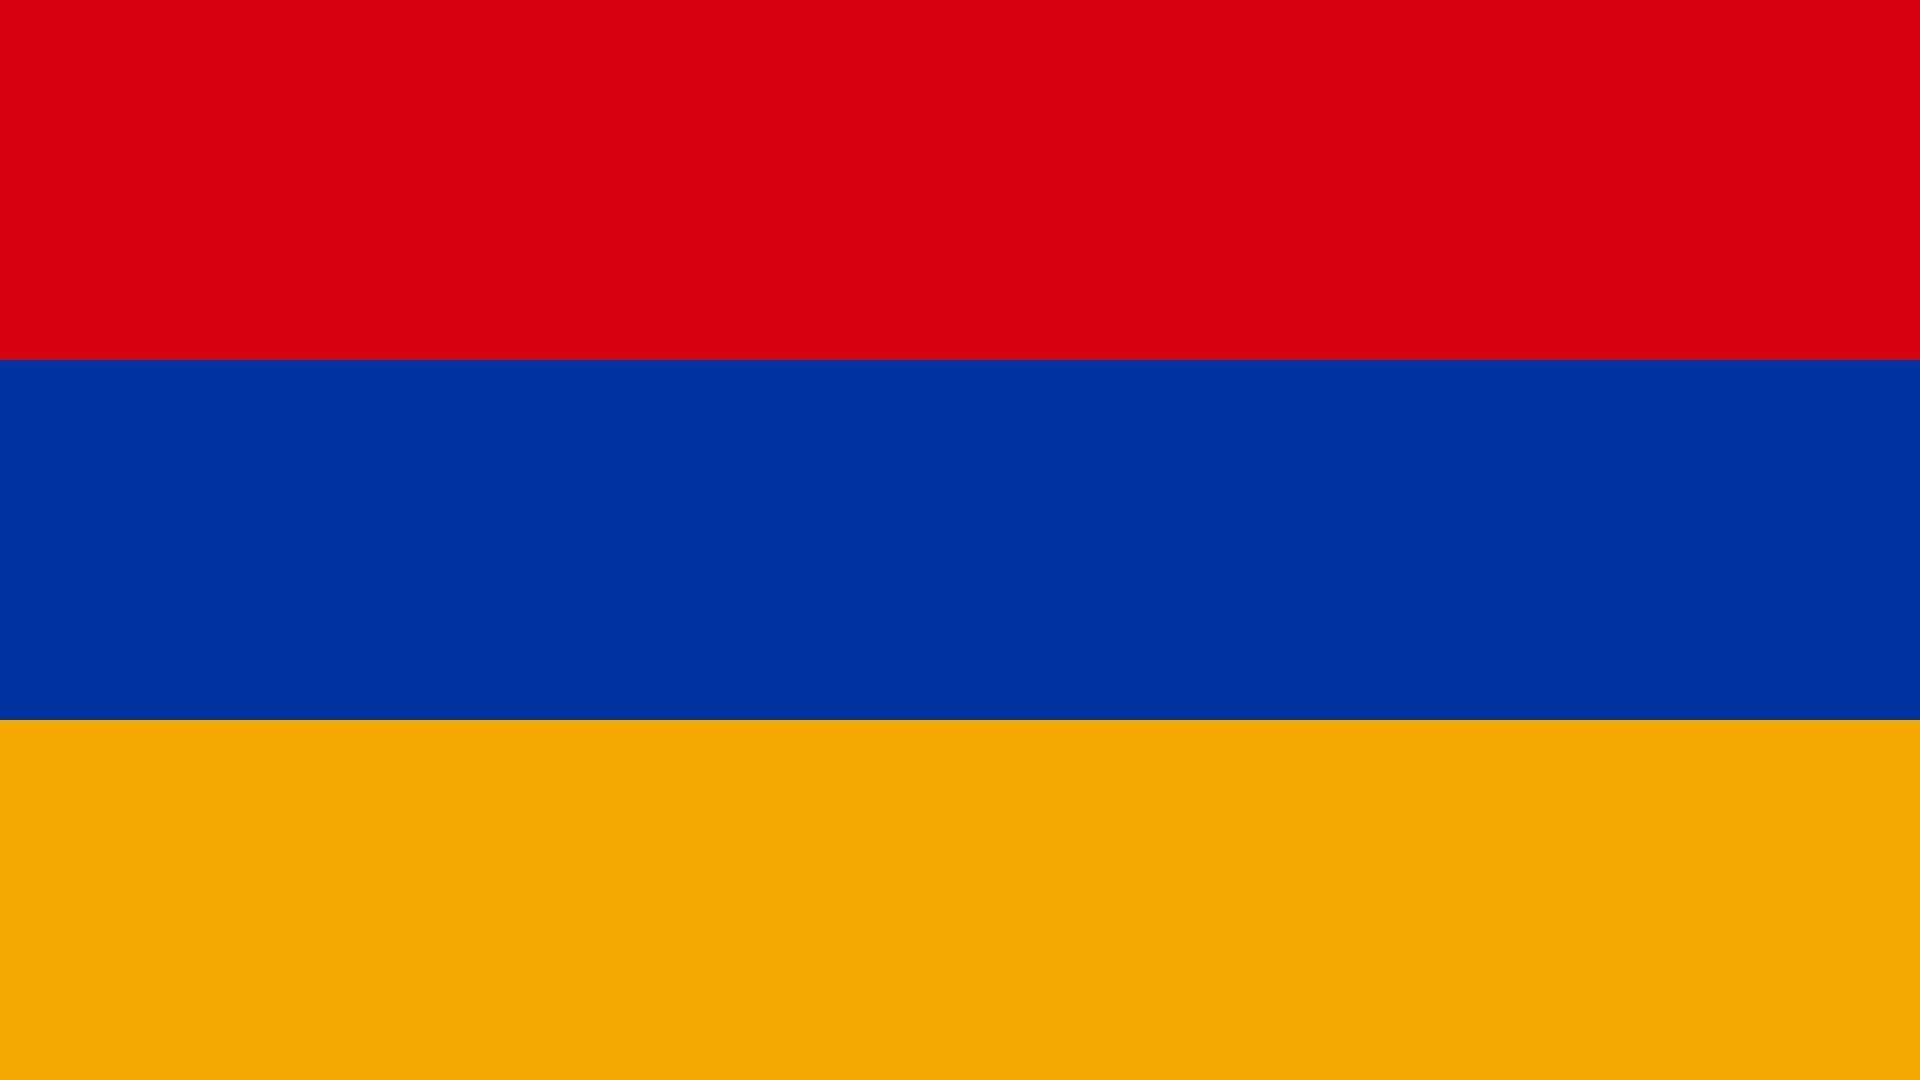 A bandeira nacional da Arménia (português europeu) é uma bandeira tricolor consistindo de três listras horizontais de cores vermelha, azul e laranja.